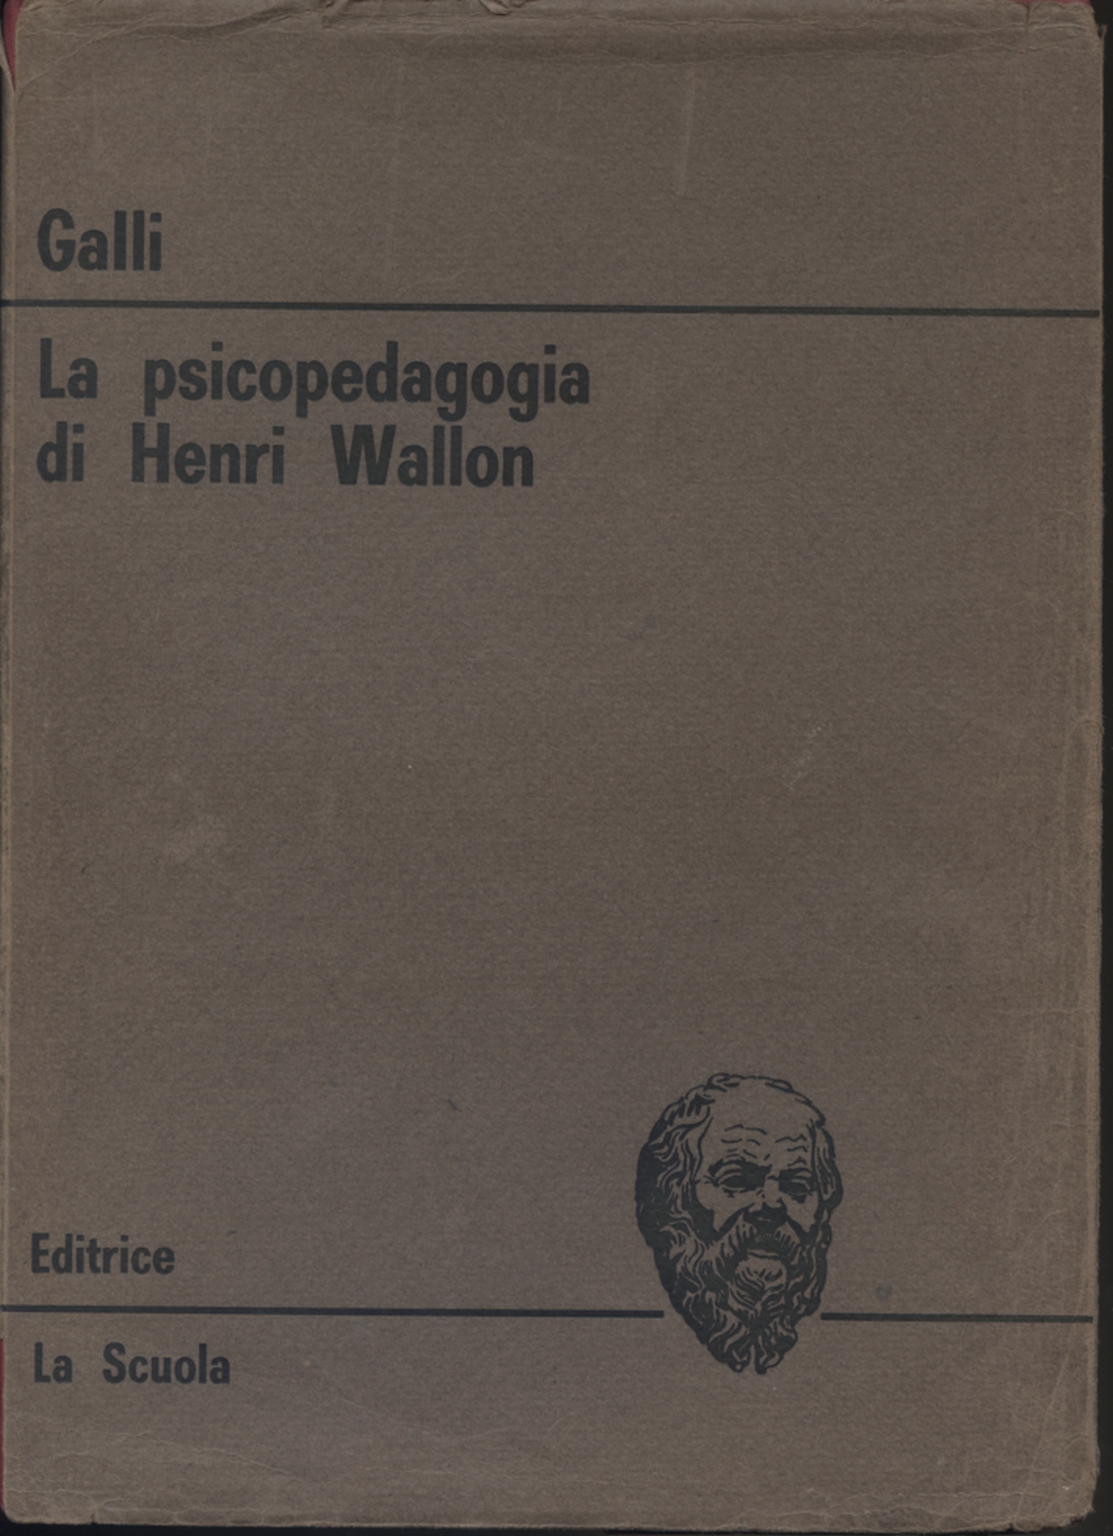 La psicopedagogia di Henri Wallon, Norberto Galli